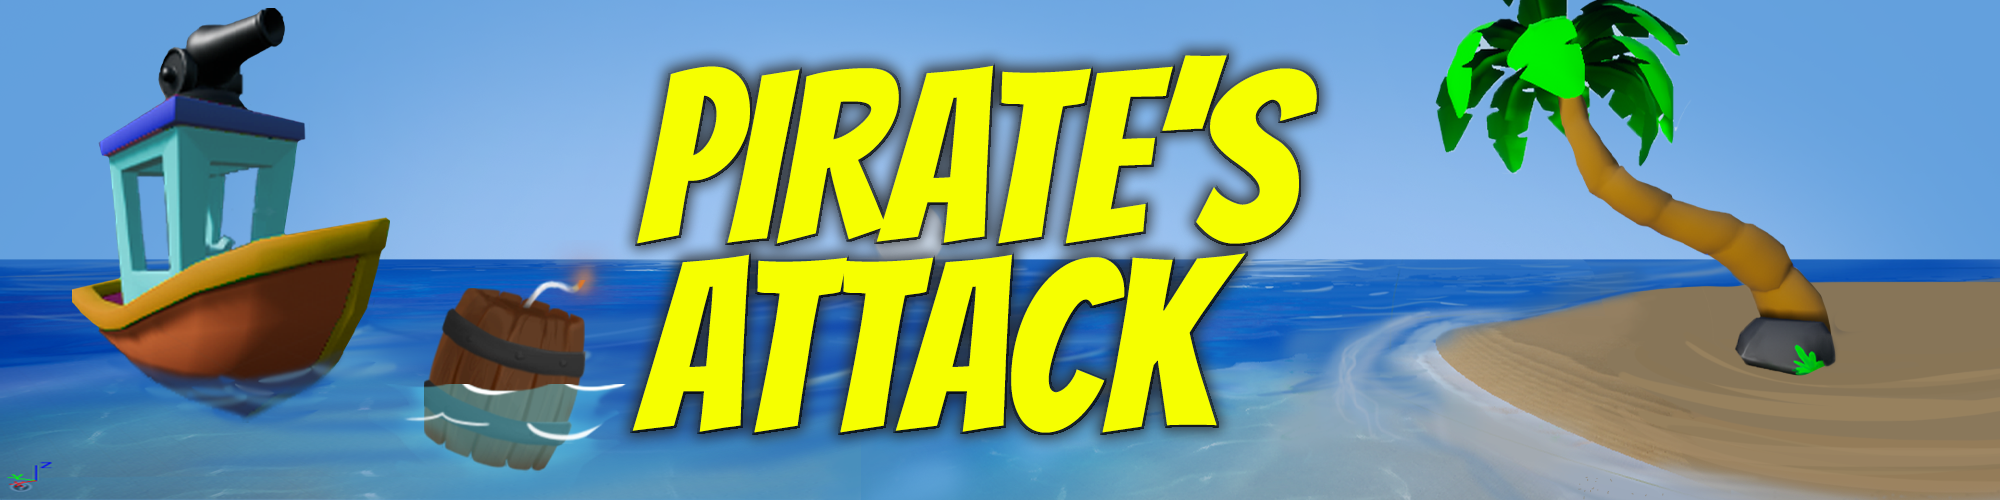 Pirate's Attack